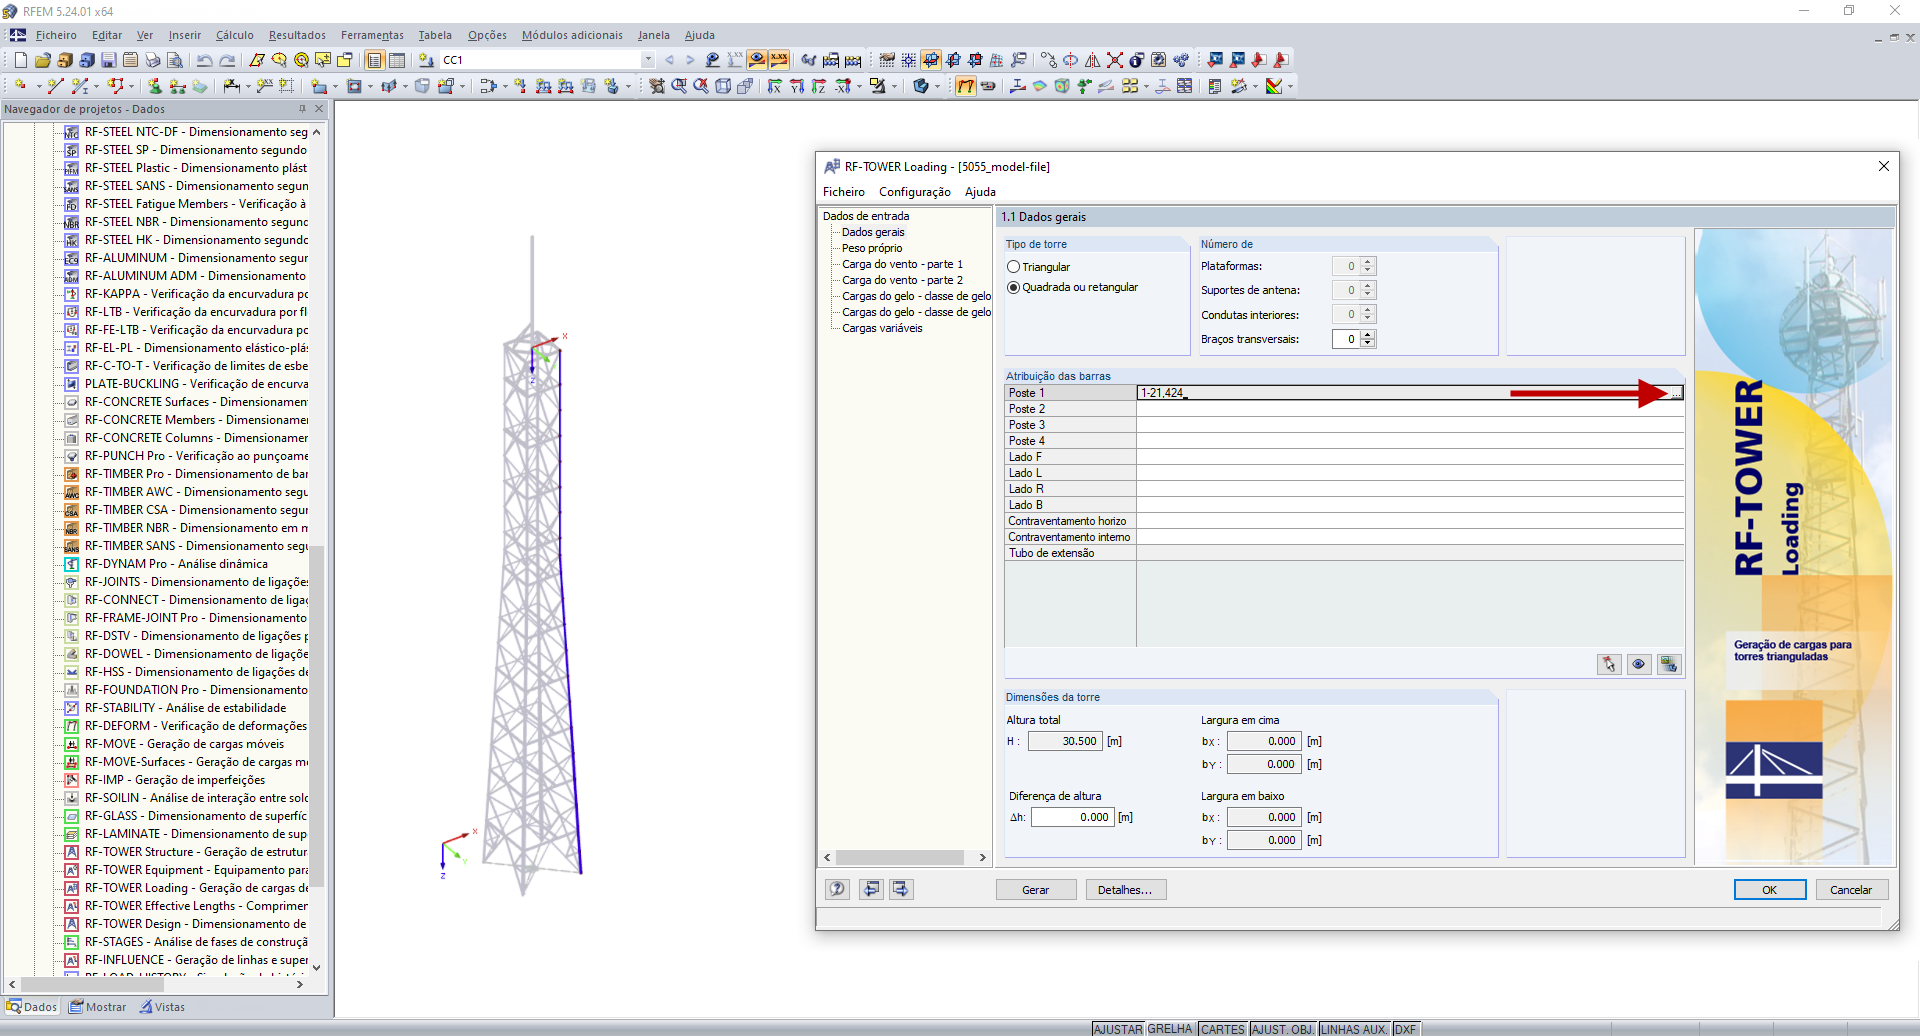 FAQ 005074 | O RF-/TOWER Loading também pode ser utilizado sem outros módulos adicionais TOWER?